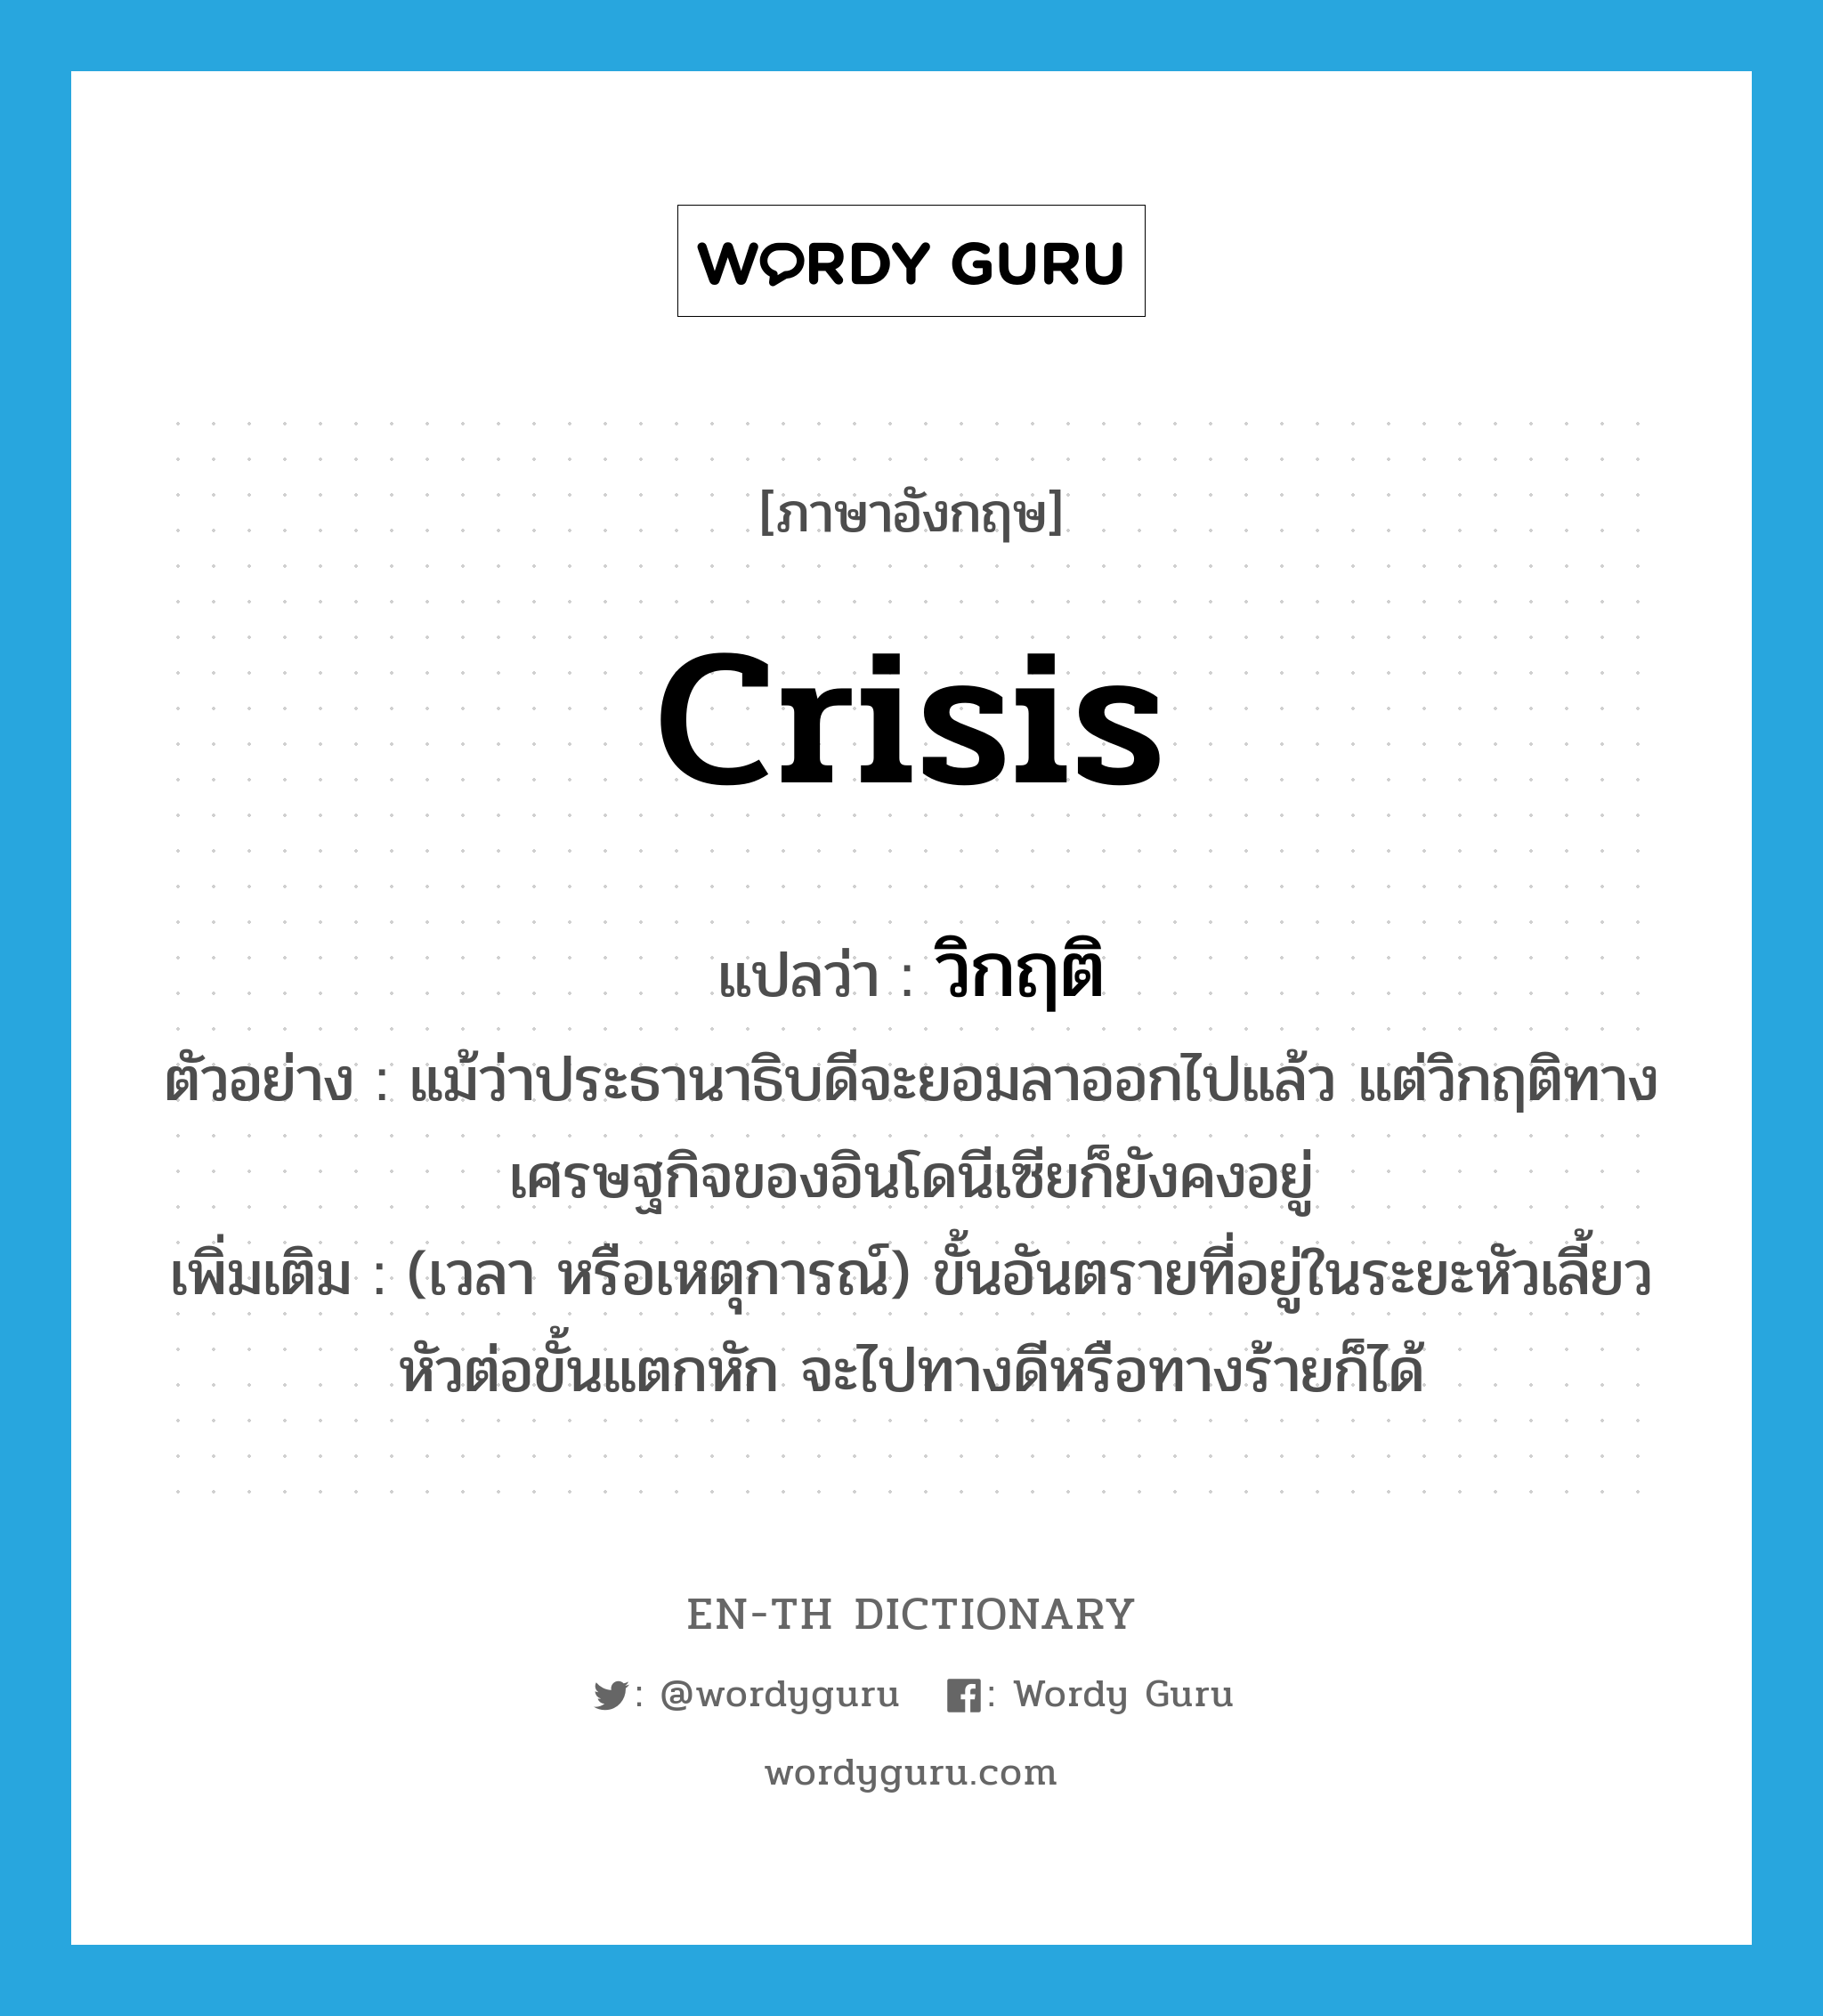 crisis แปลว่า?, คำศัพท์ภาษาอังกฤษ crisis แปลว่า วิกฤติ ประเภท N ตัวอย่าง แม้ว่าประธานาธิบดีจะยอมลาออกไปแล้ว แต่วิกฤติทางเศรษฐกิจของอินโดนีเซียก็ยังคงอยู่ เพิ่มเติม (เวลา หรือเหตุการณ์) ขั้นอันตรายที่อยู่ในระยะหัวเลี้ยวหัวต่อขั้นแตกหัก จะไปทางดีหรือทางร้ายก็ได้ หมวด N